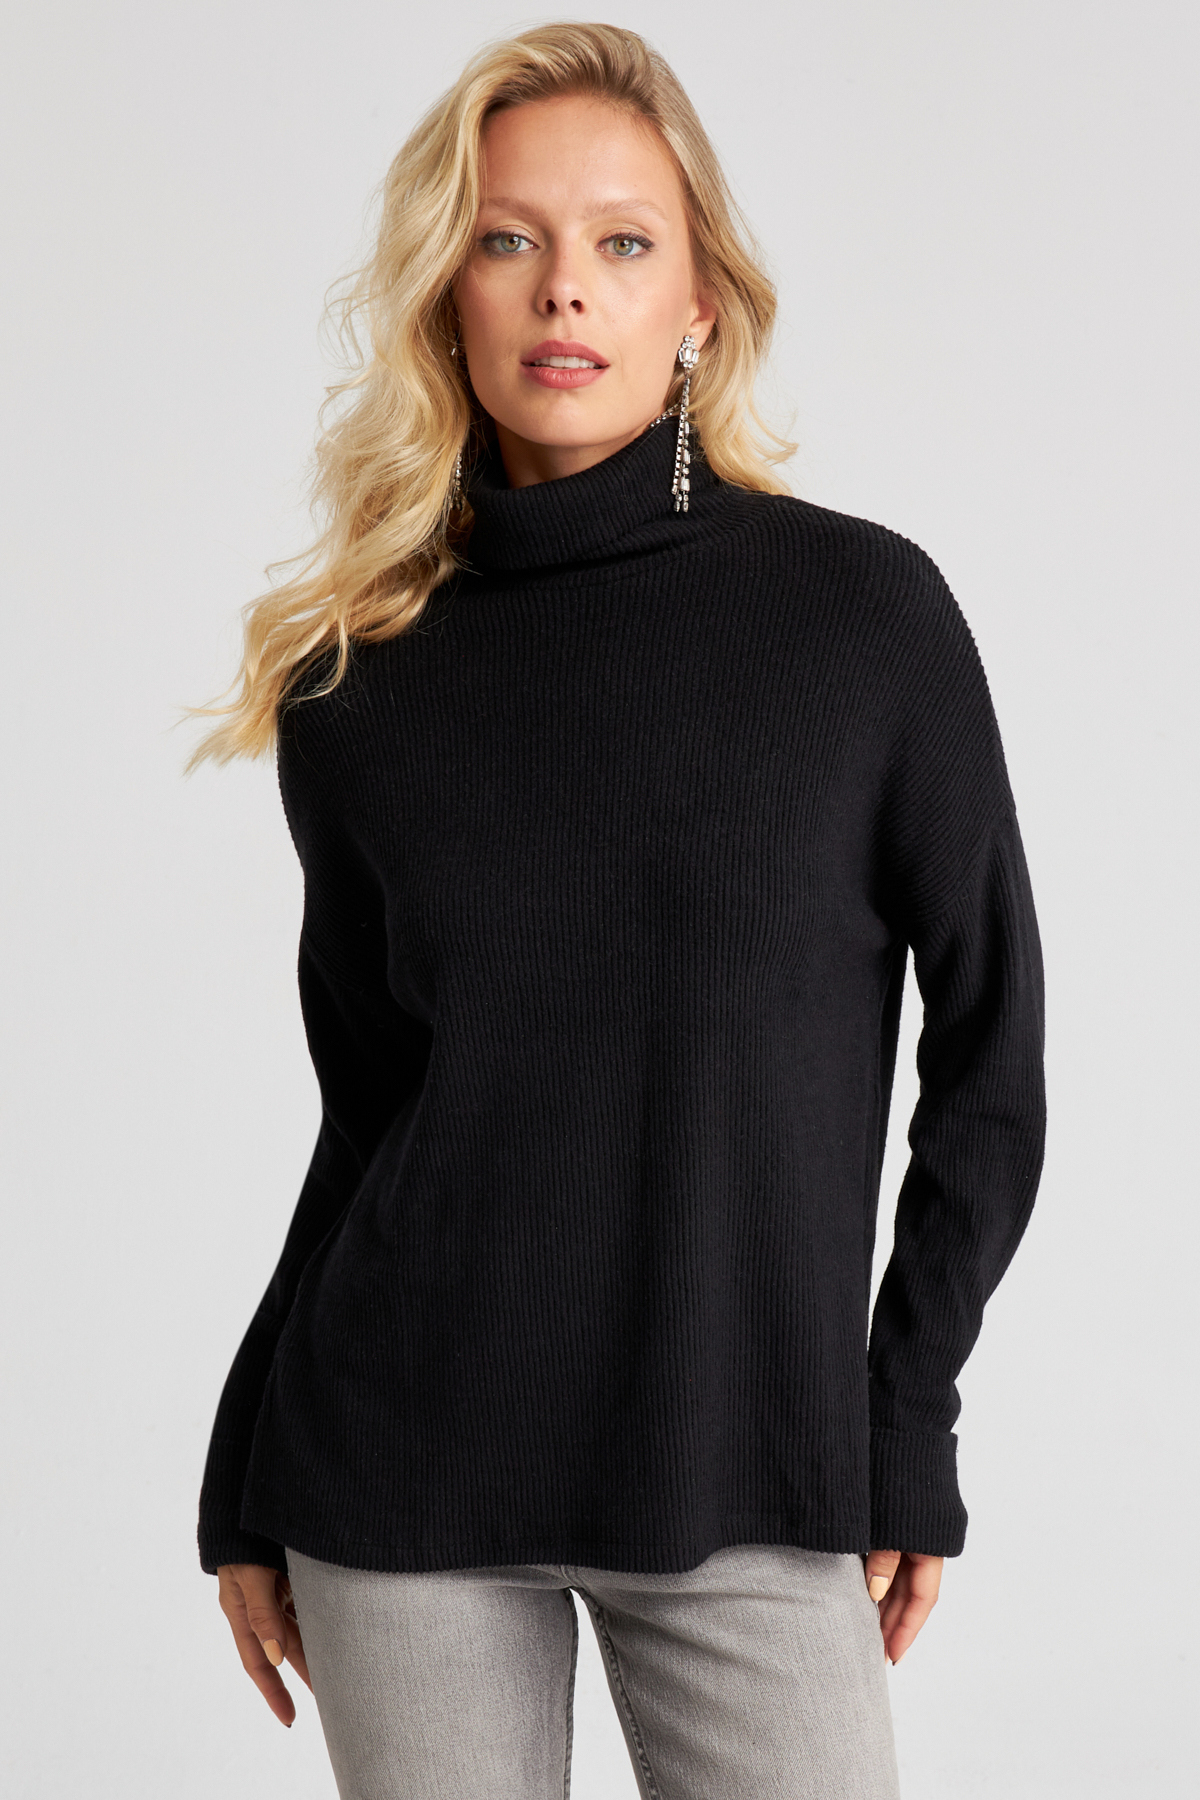 Levně Cool & Sexy Women's Black Fisherman Corded Knitwear Sweater